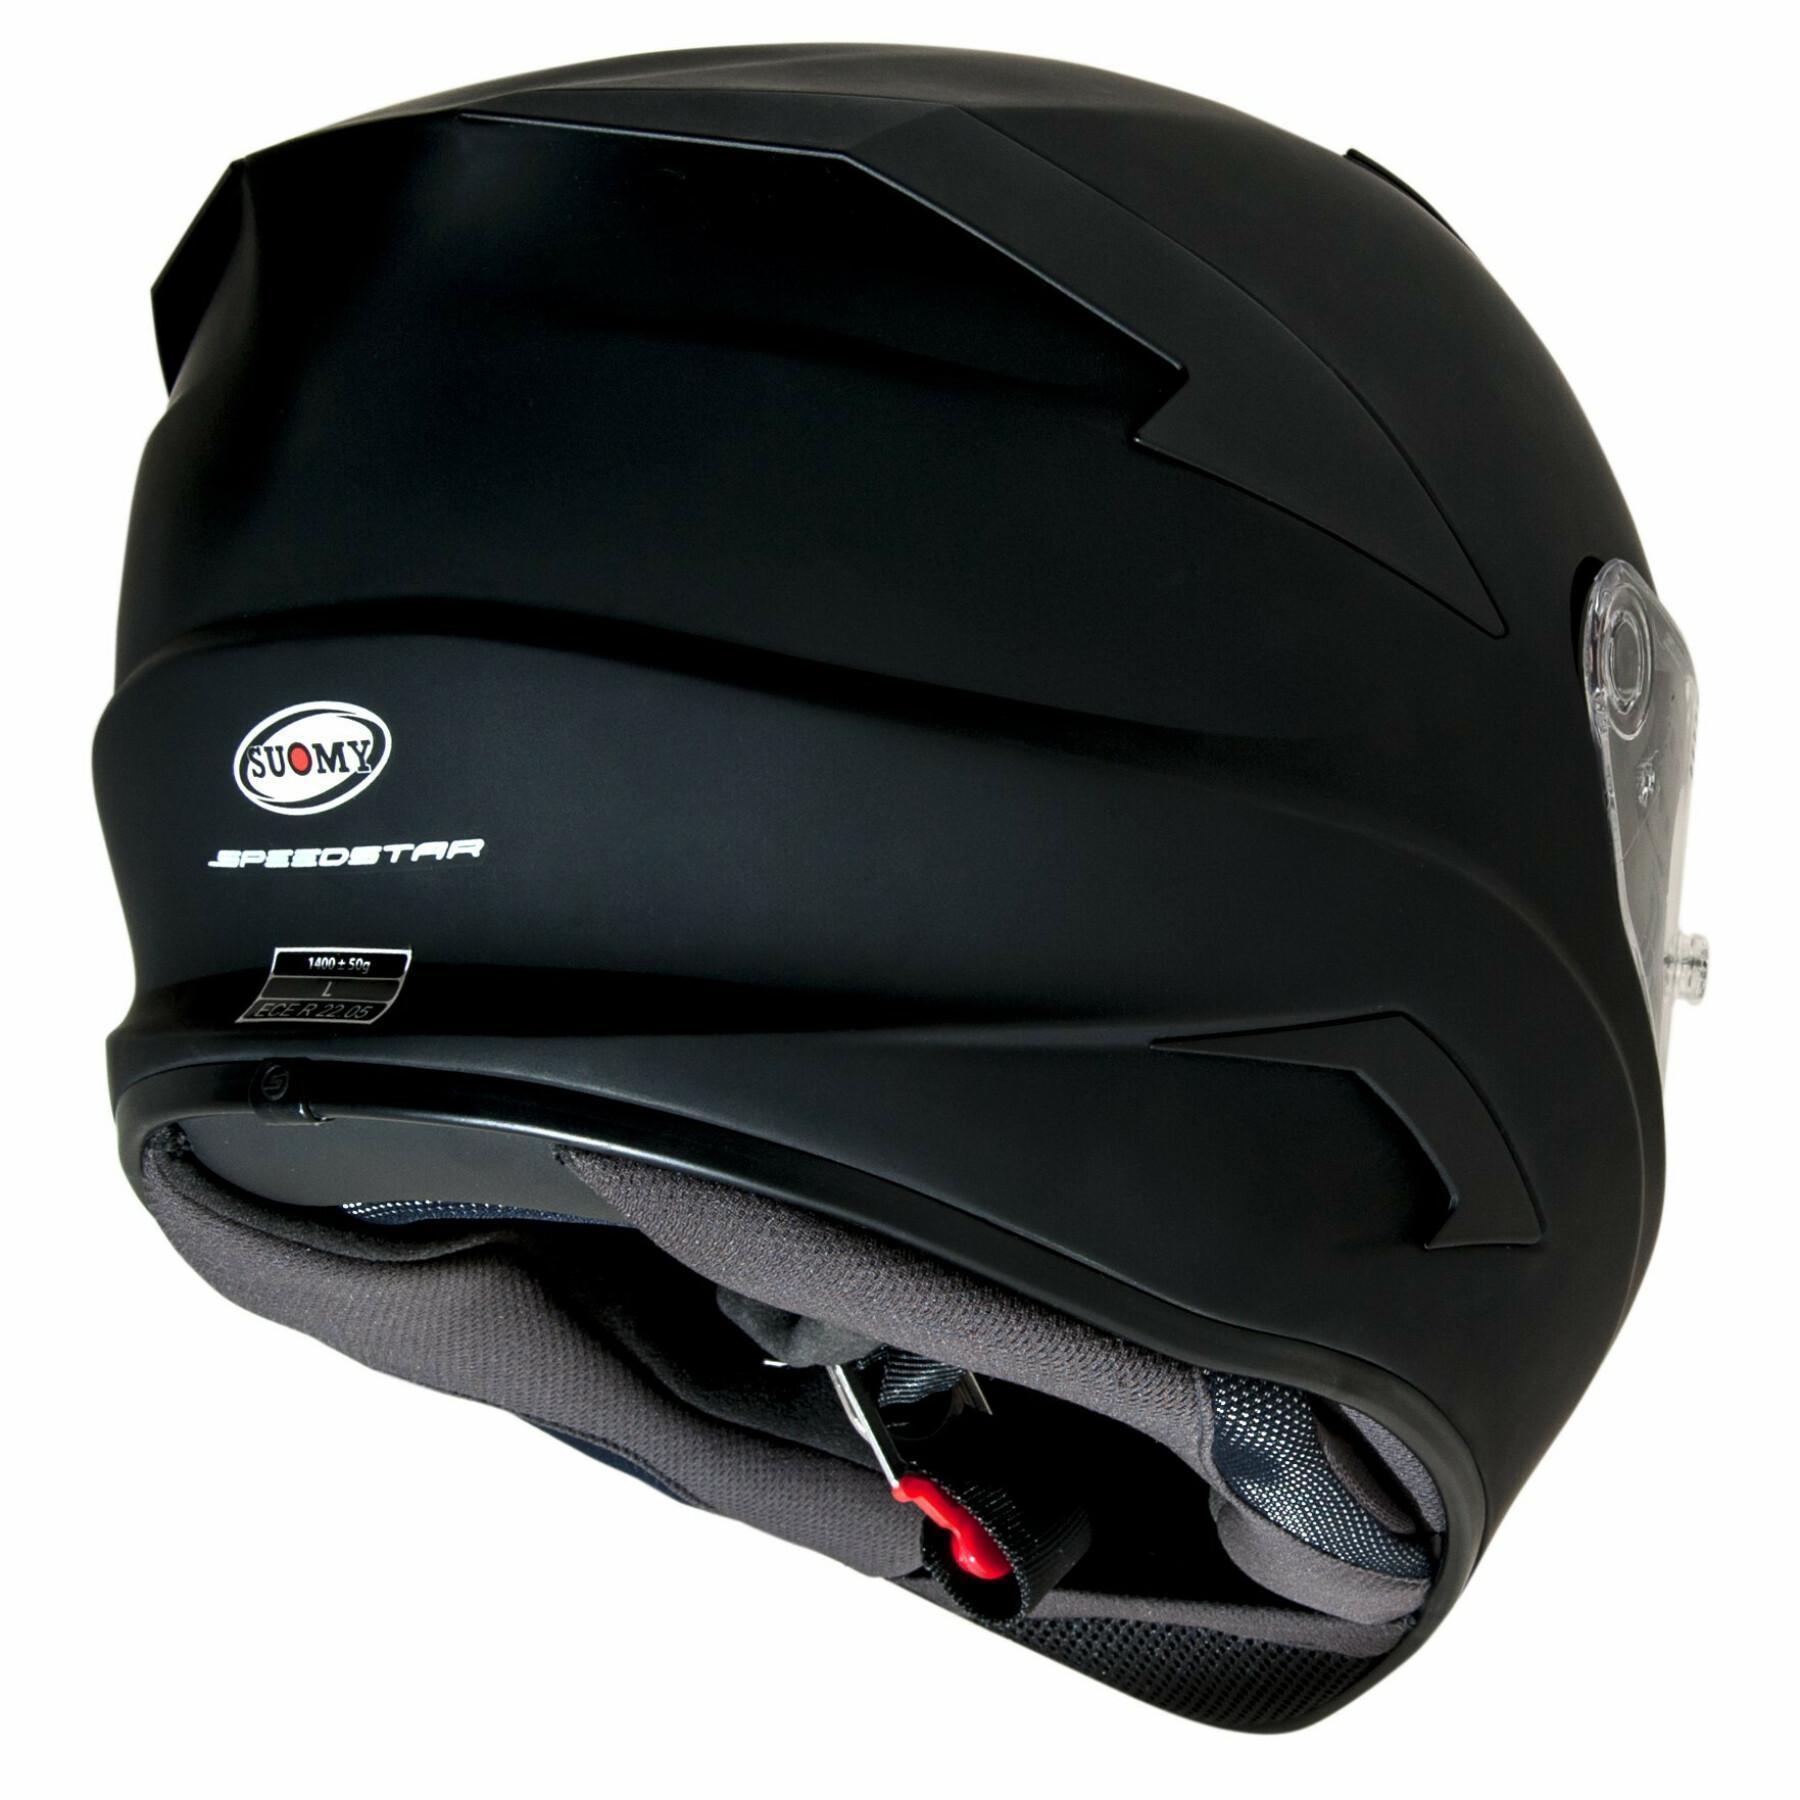 Full face helmet Suomy speedstar plain